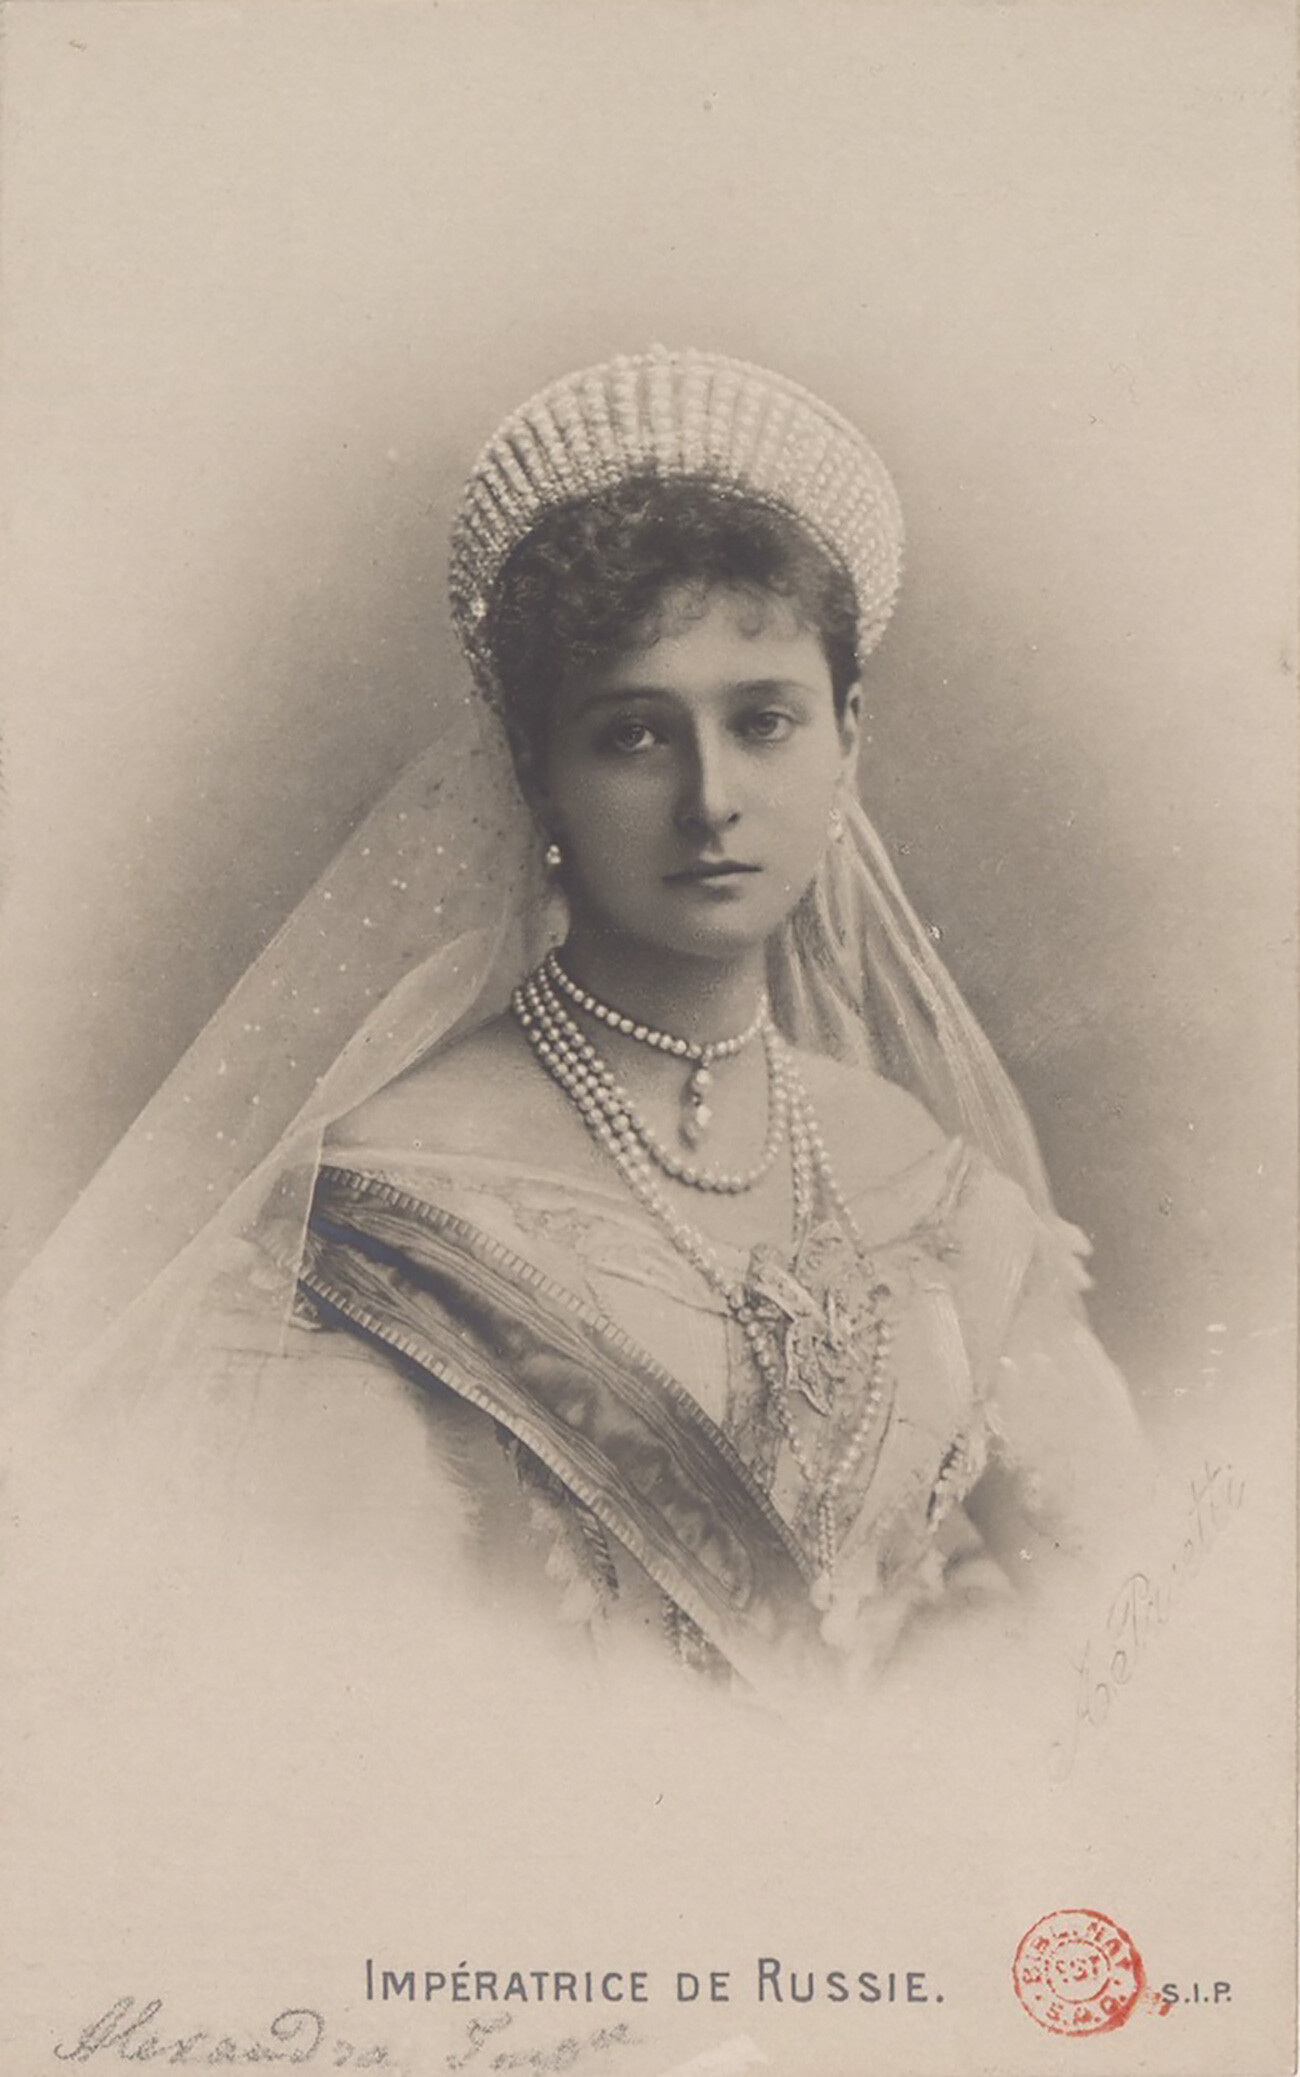 Alexandra Feodorovna in her tiara.